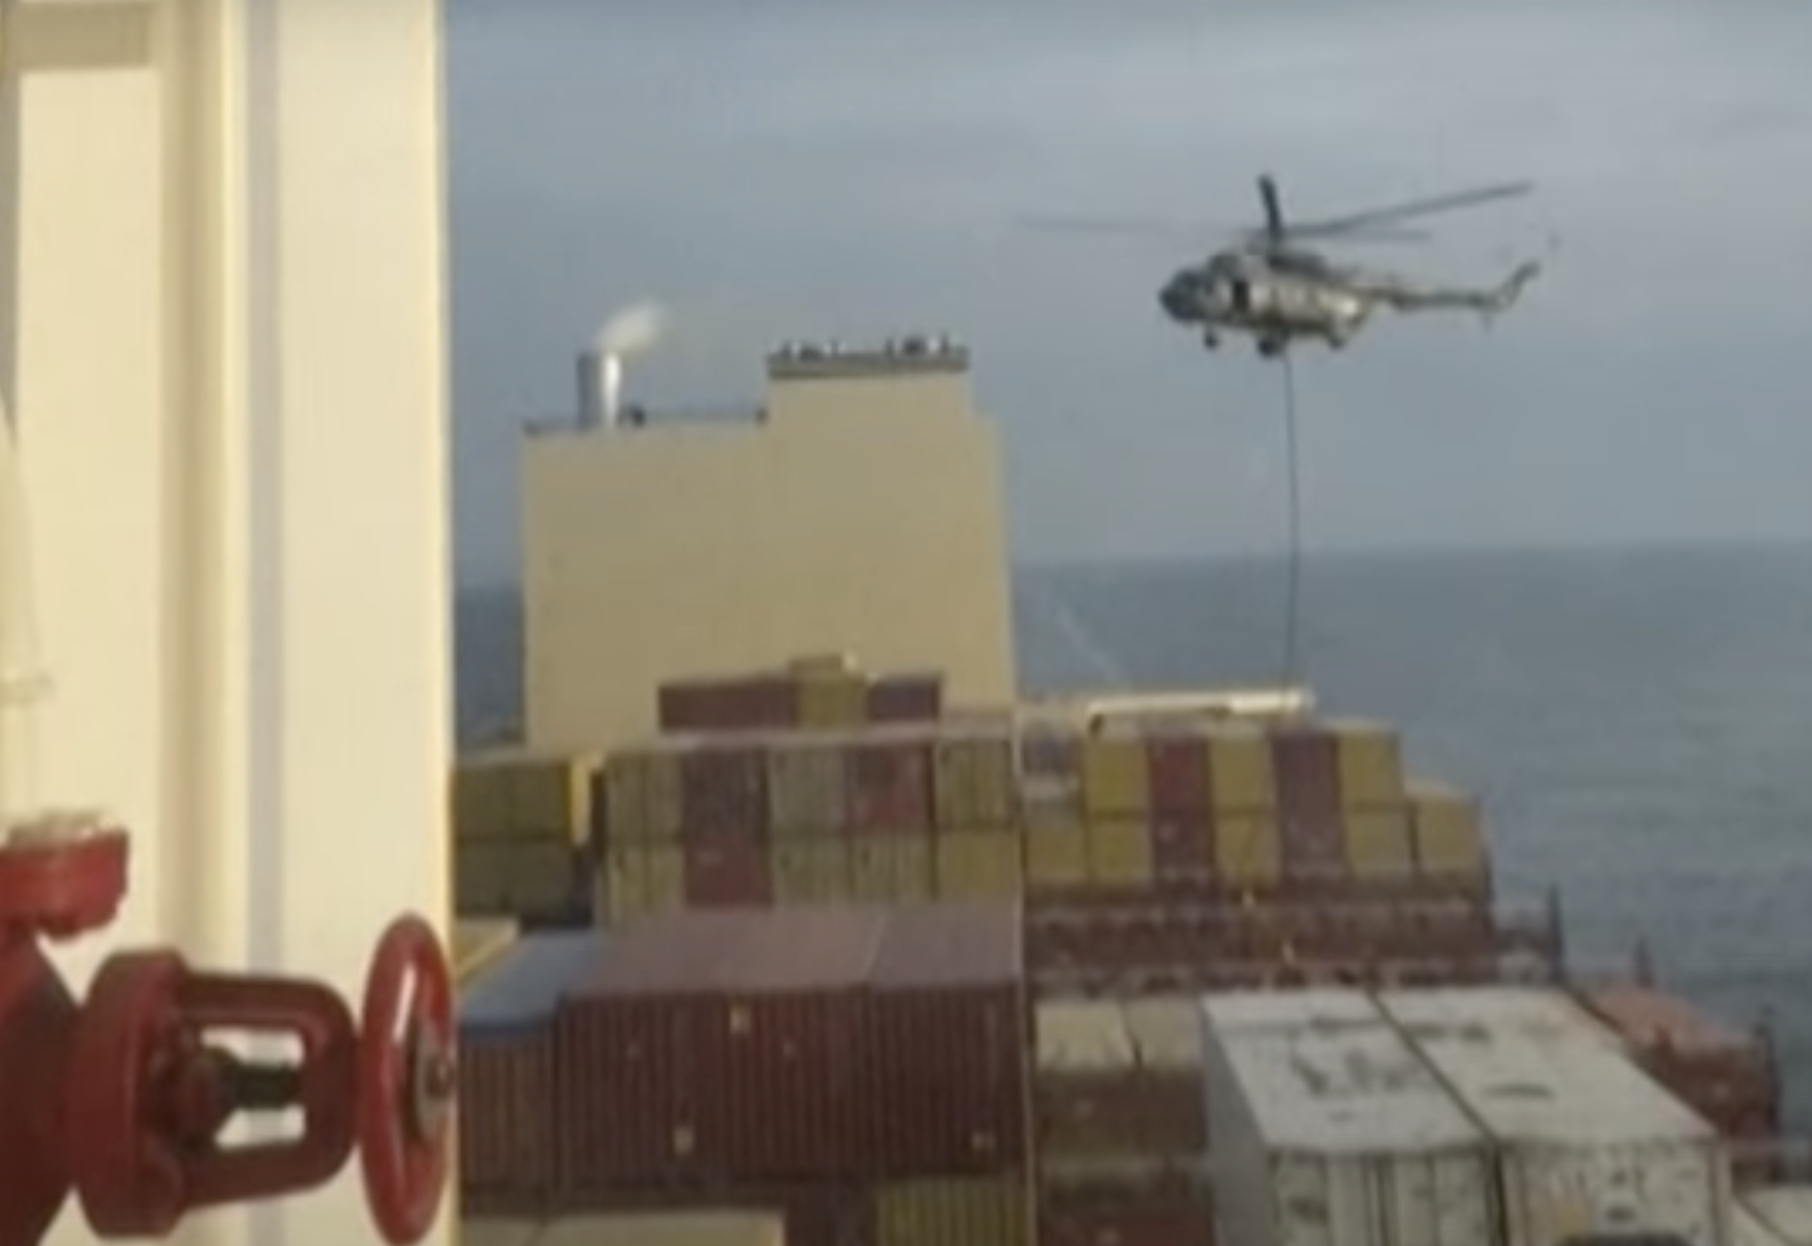 Irán aborda buque israelí en estrecho de Ormuz, aumentando tensión regional